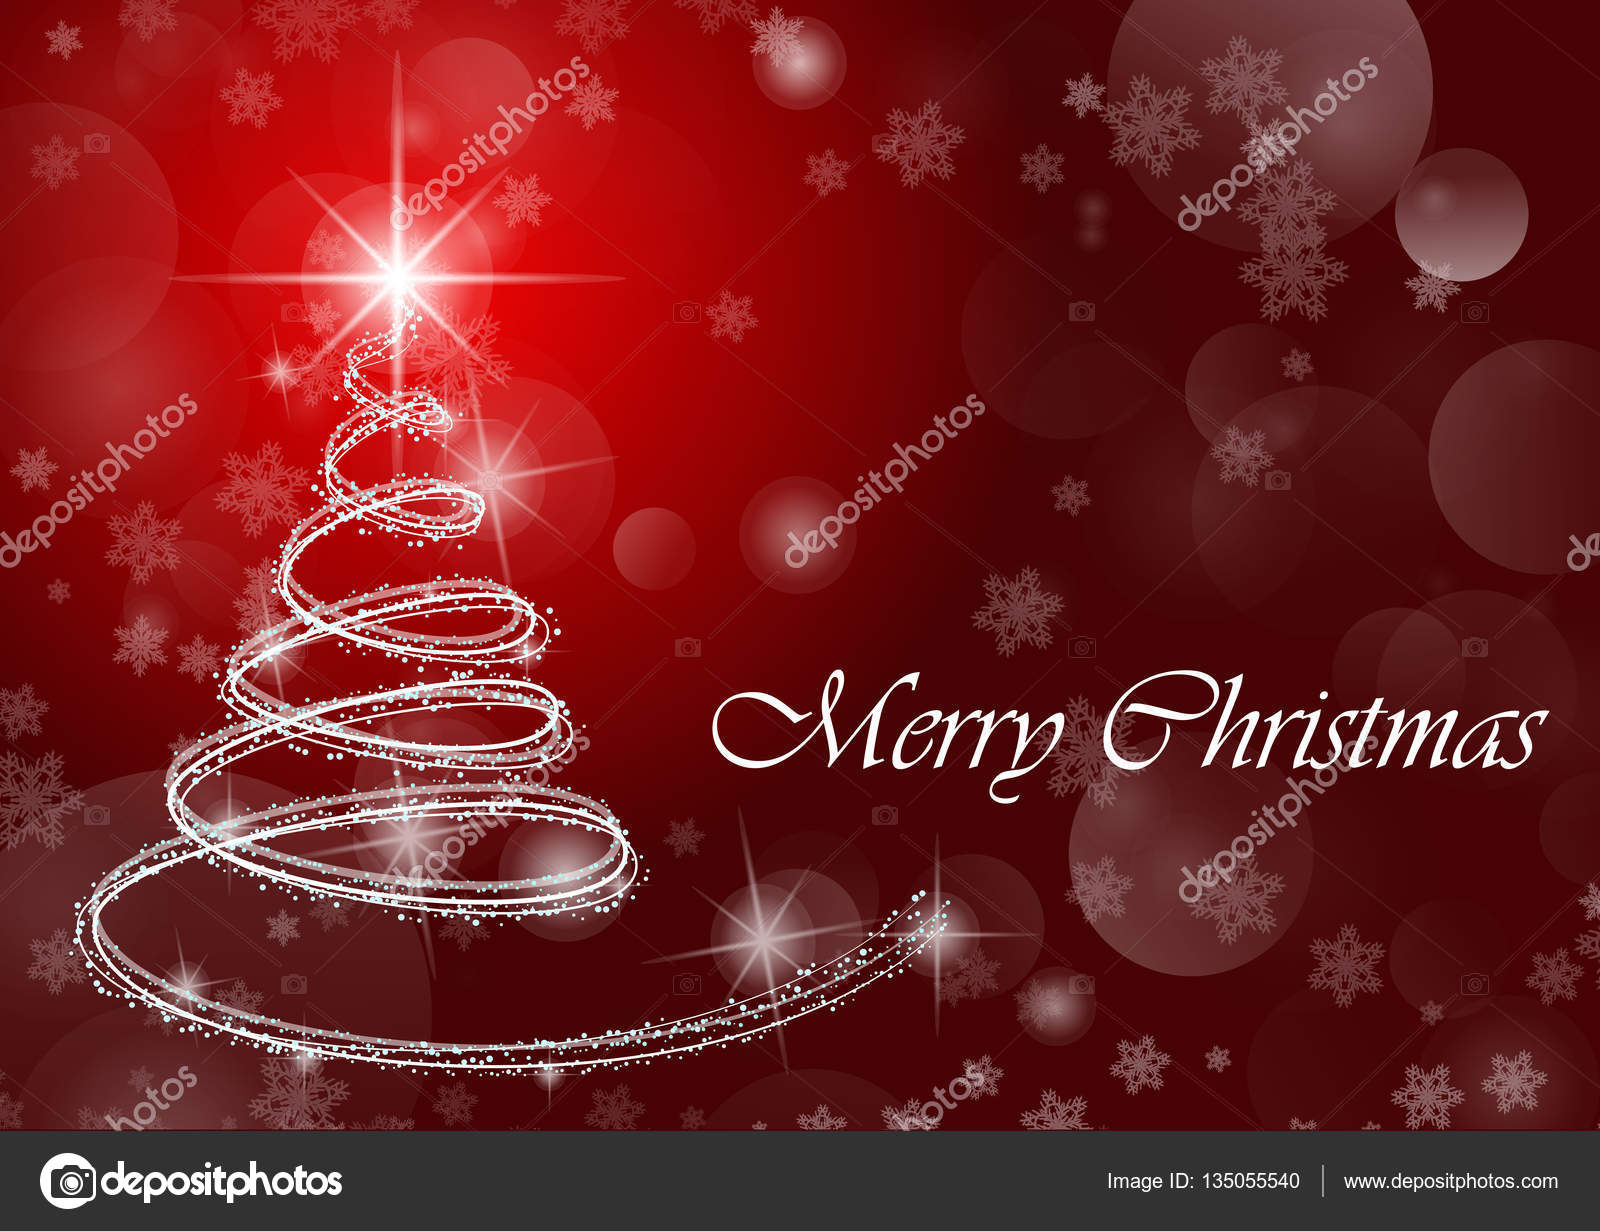 Merry Christmas Immagini Di Natale Gratis - HD Wallpaper 